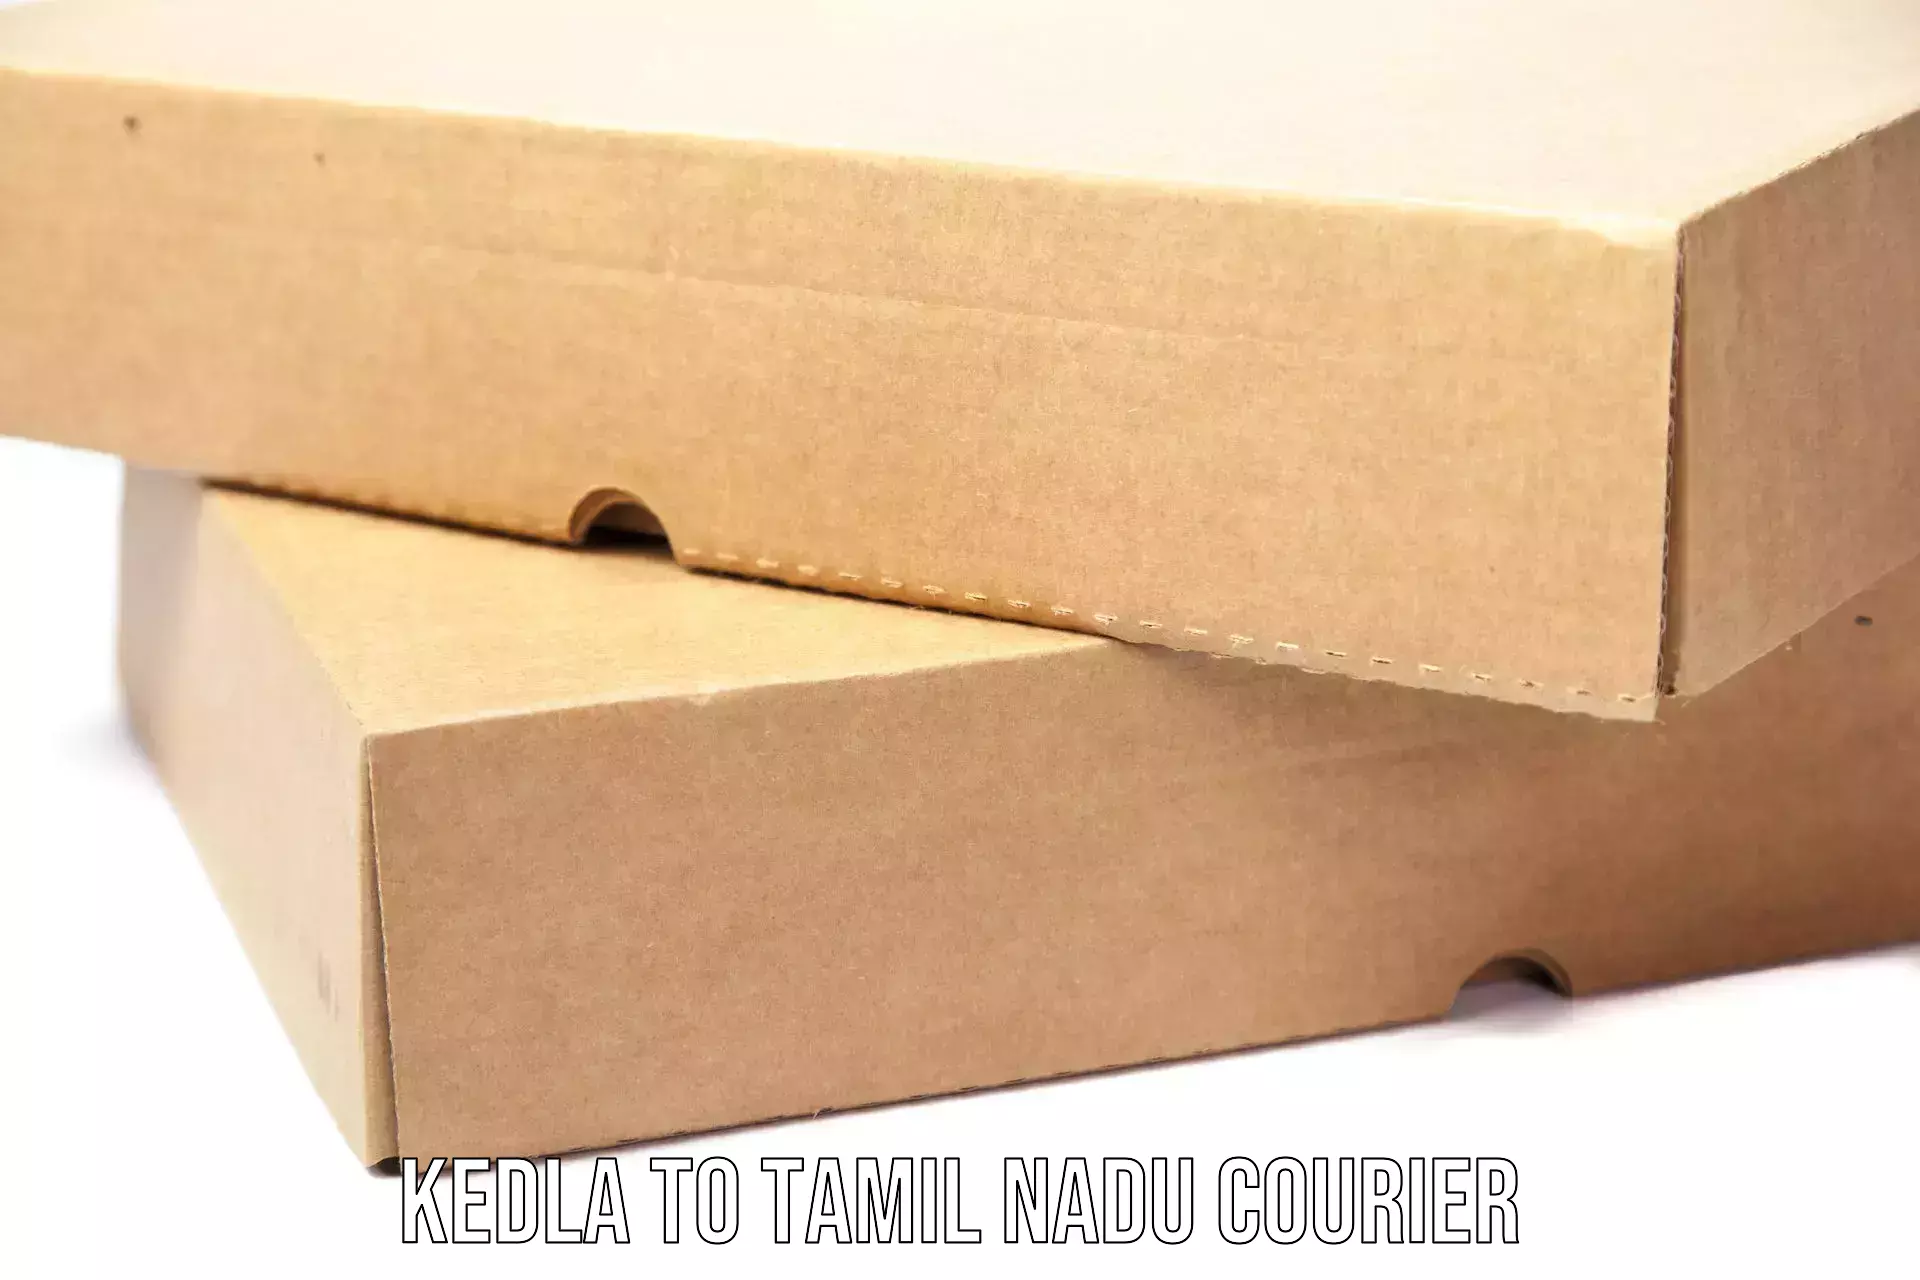 Courier service booking Kedla to Nilakottai